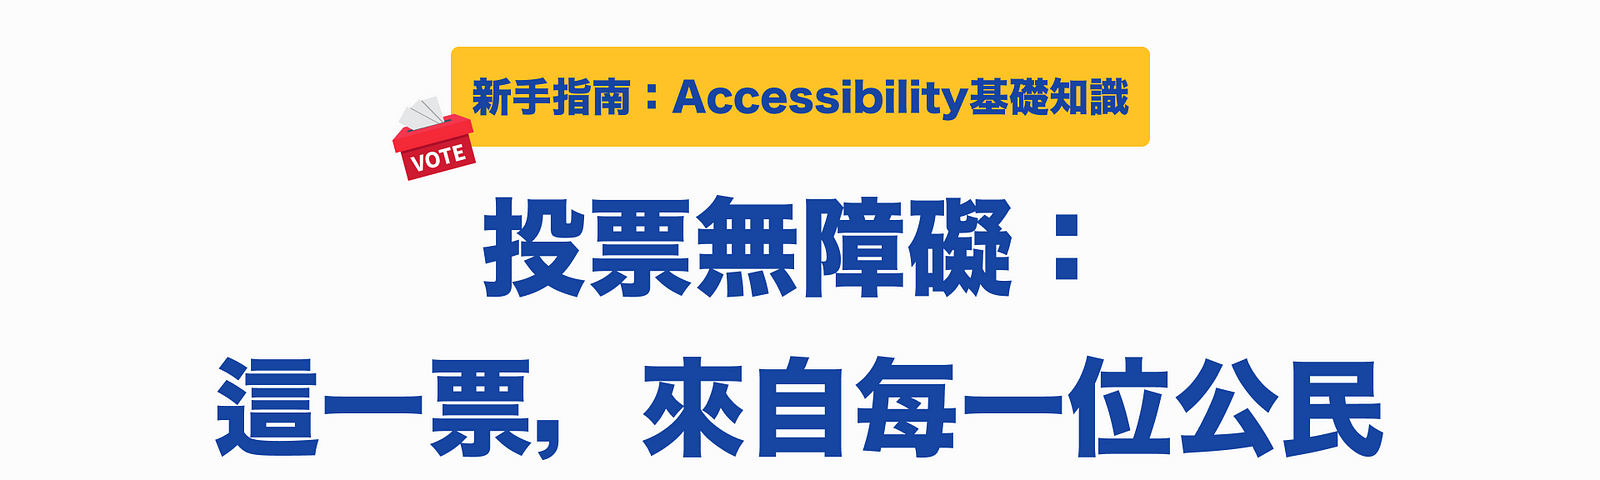 這是文章首圖，為「新手指南：Accessibility基礎知識」系列的文章，標題為「投票無障礙：這一票，來自每一位公民」